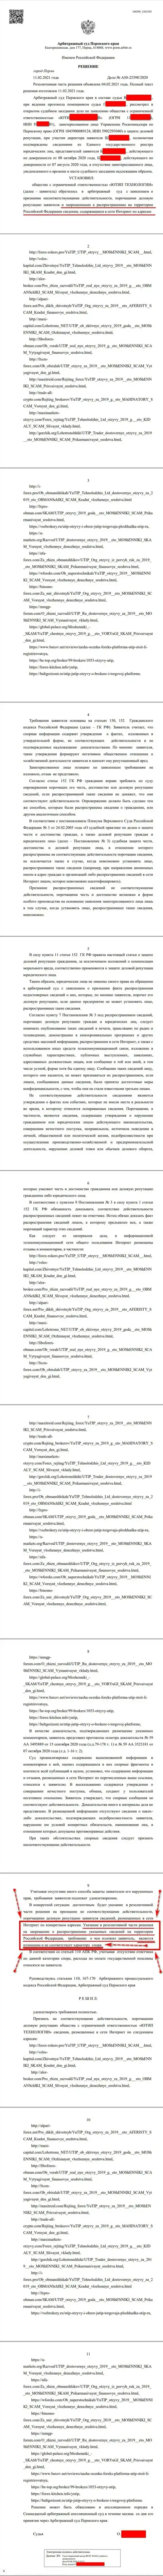 Решение Арбитражного суда г. Перми по судебному иску мошенников UTIP Ru в отношении портала Форекс Брокерс Про